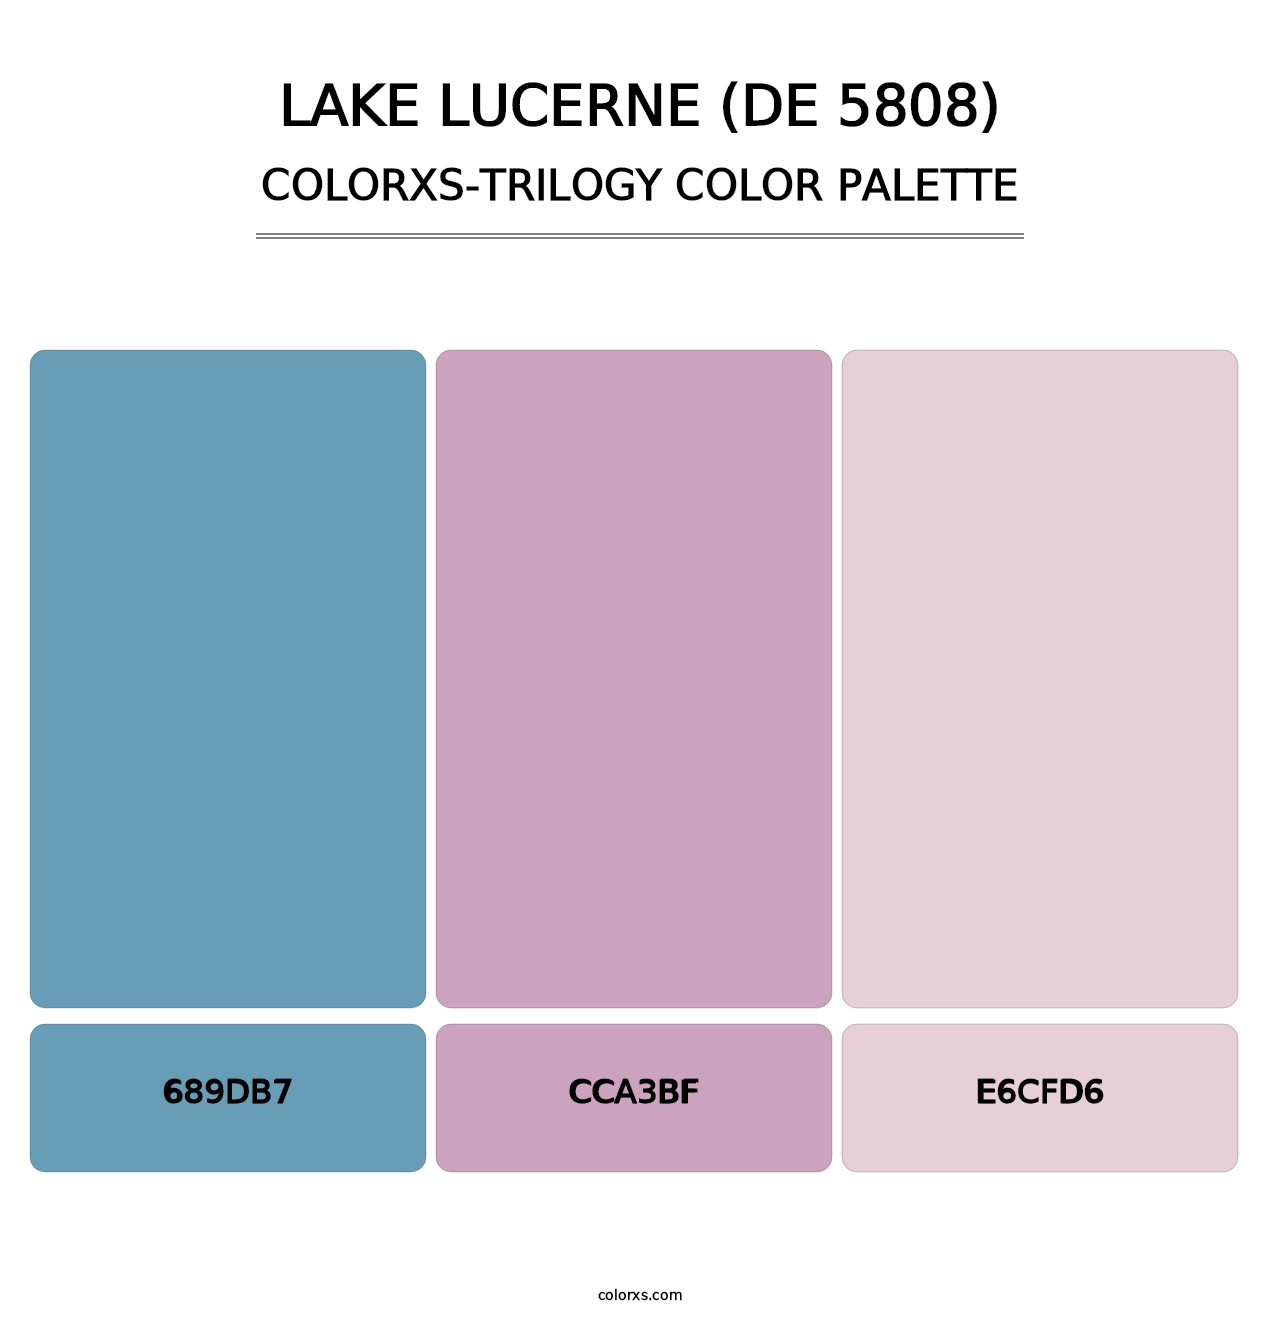 Lake Lucerne (DE 5808) - Colorxs Trilogy Palette